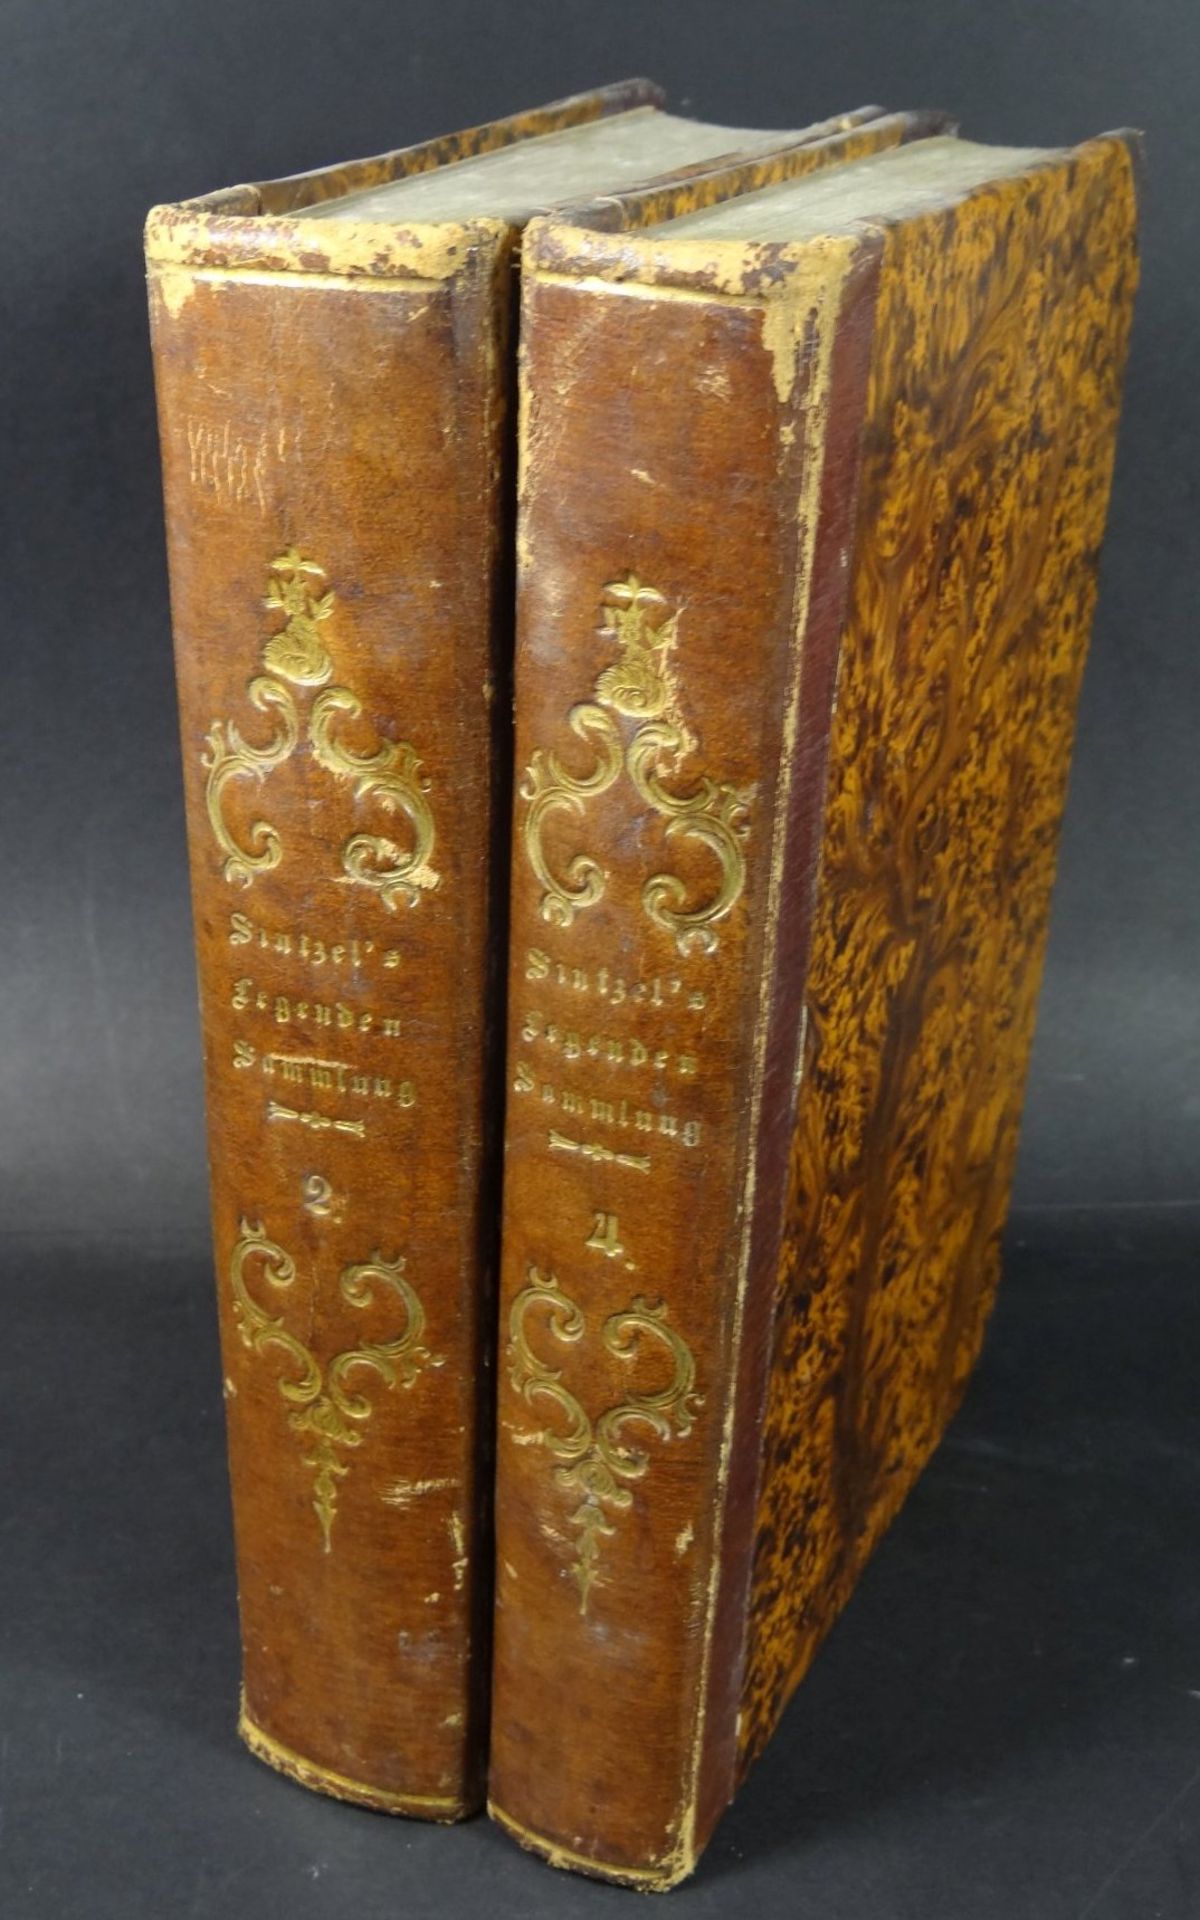 "Leben und Thaten der Heiligen" Augsburg 1840, Legenden-Sammlung, 4 Bde Nr. 1 bis 4,Halbleder, etwas